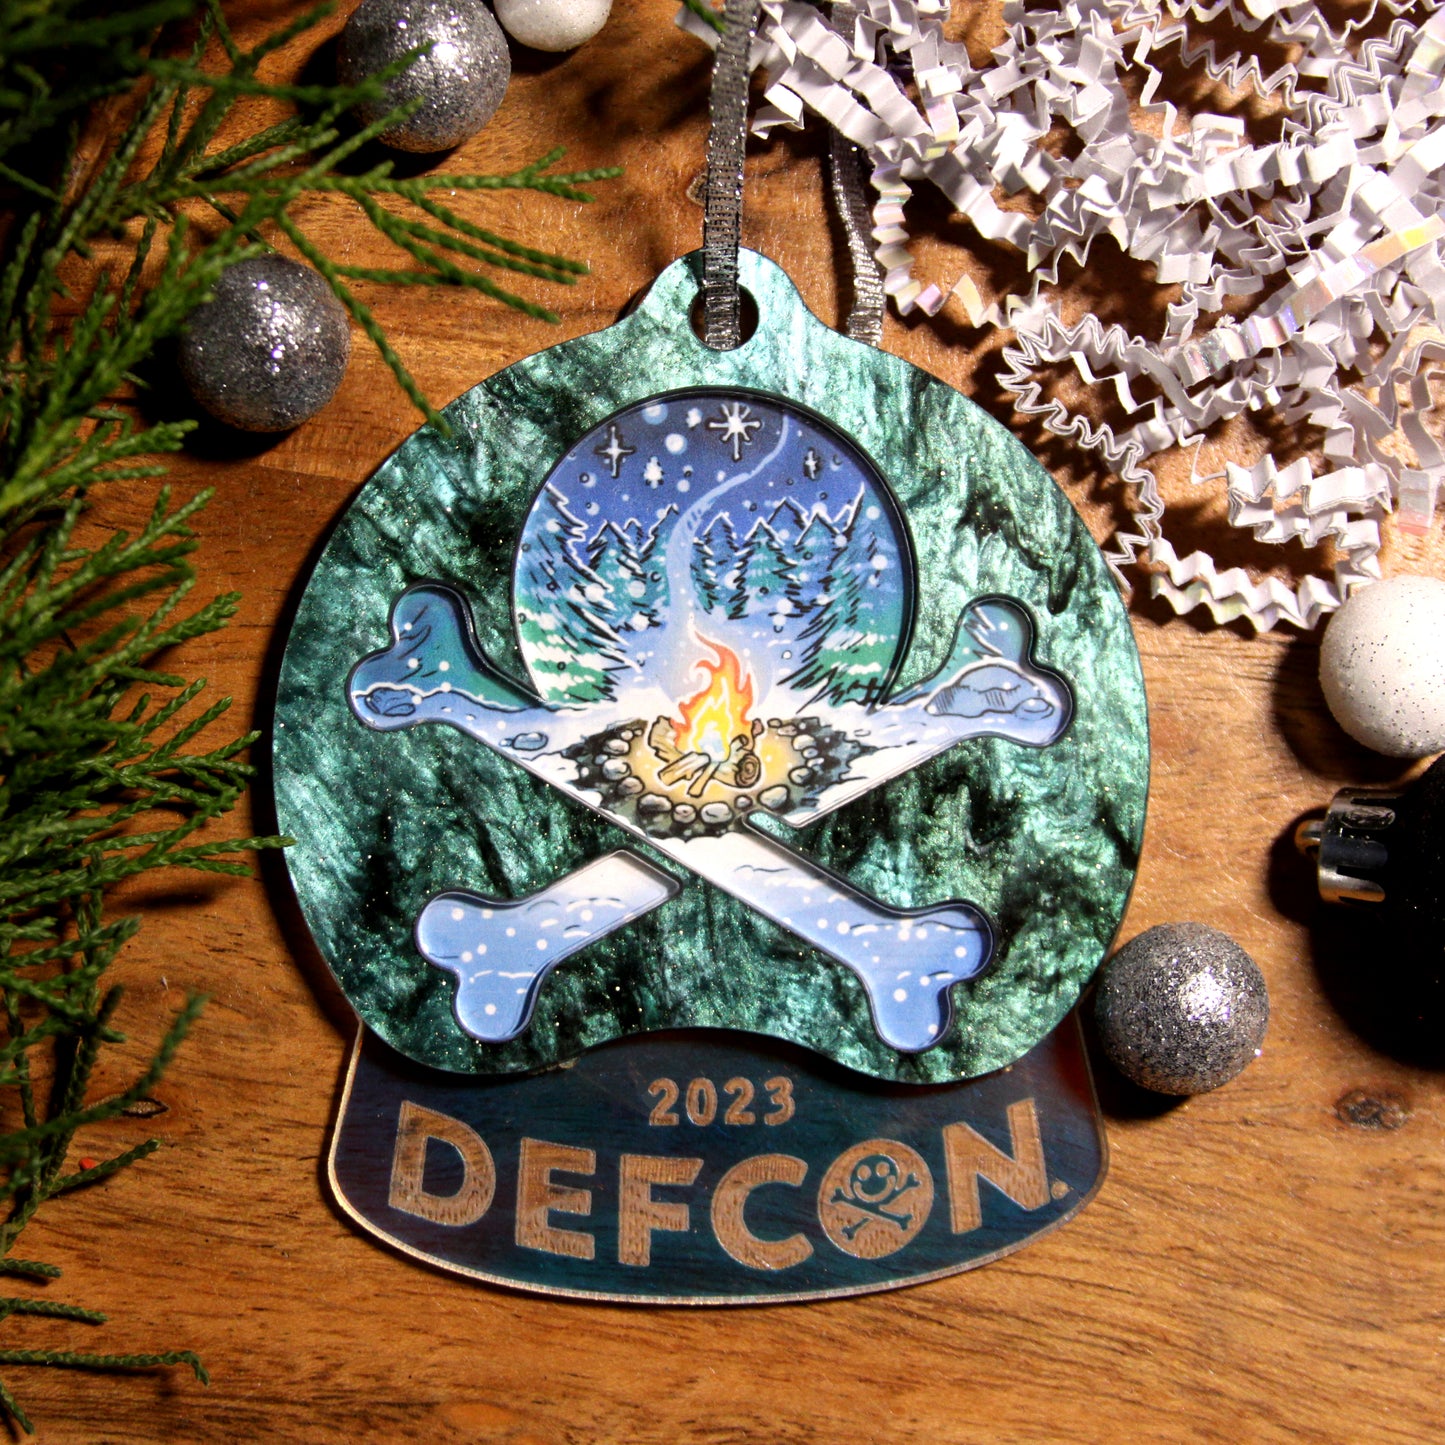 3 Ornament Bundle - DEFCON 2023 Ornament Set